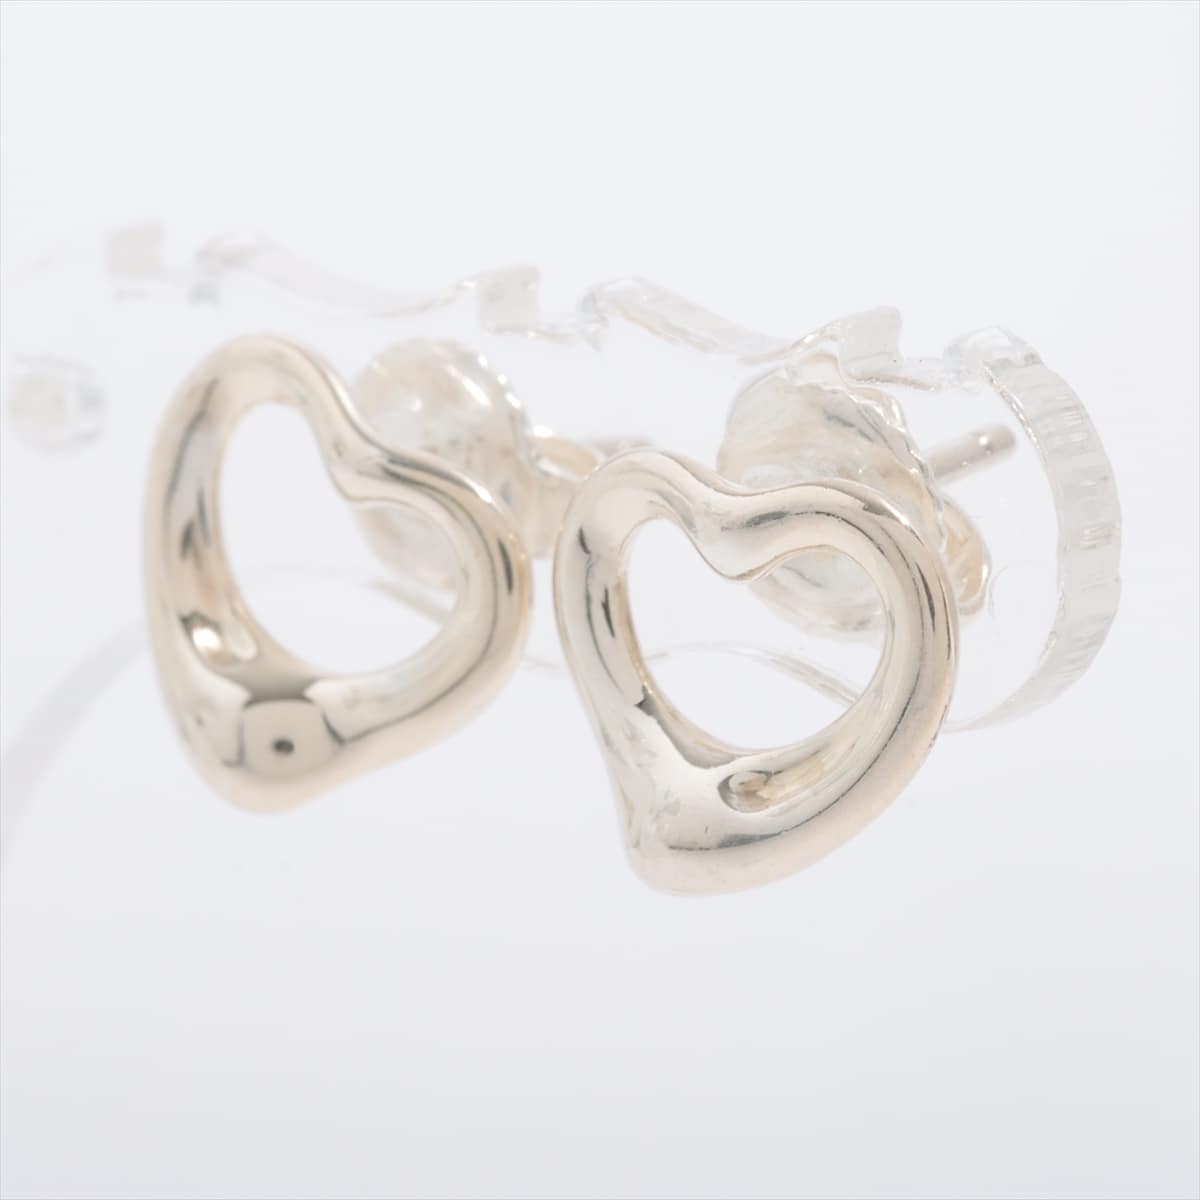 Tiffany Open Heart Piercing jewelry (for both ears) 925 1.9g Silver